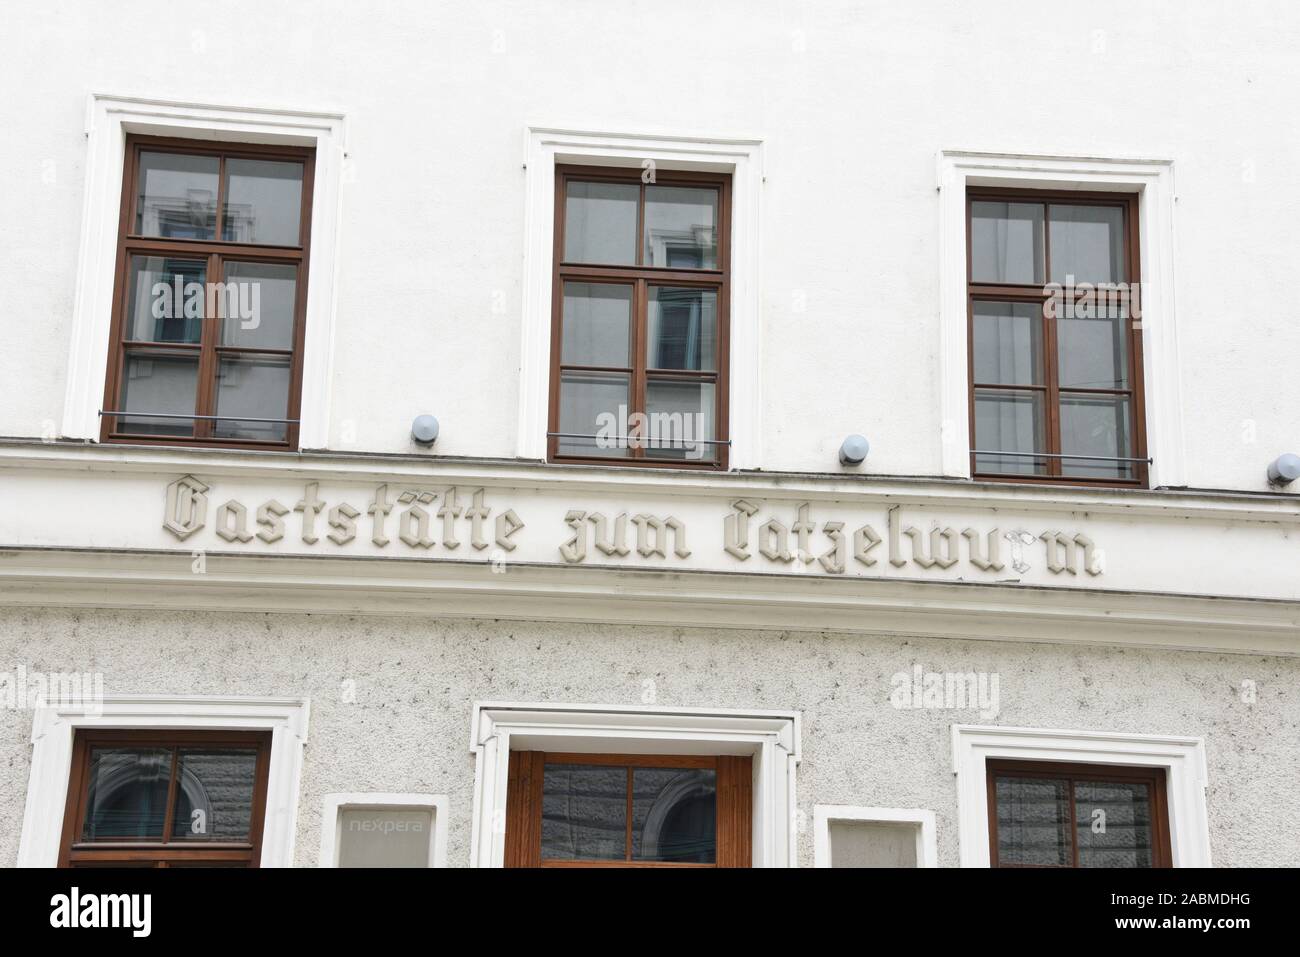 Une ancienne inscription sur la façade de la maison à l'intérieur de Wienerstraße fait référence à l'ancienne restaurant zum Tatzelwurm. [Traduction automatique] Banque D'Images